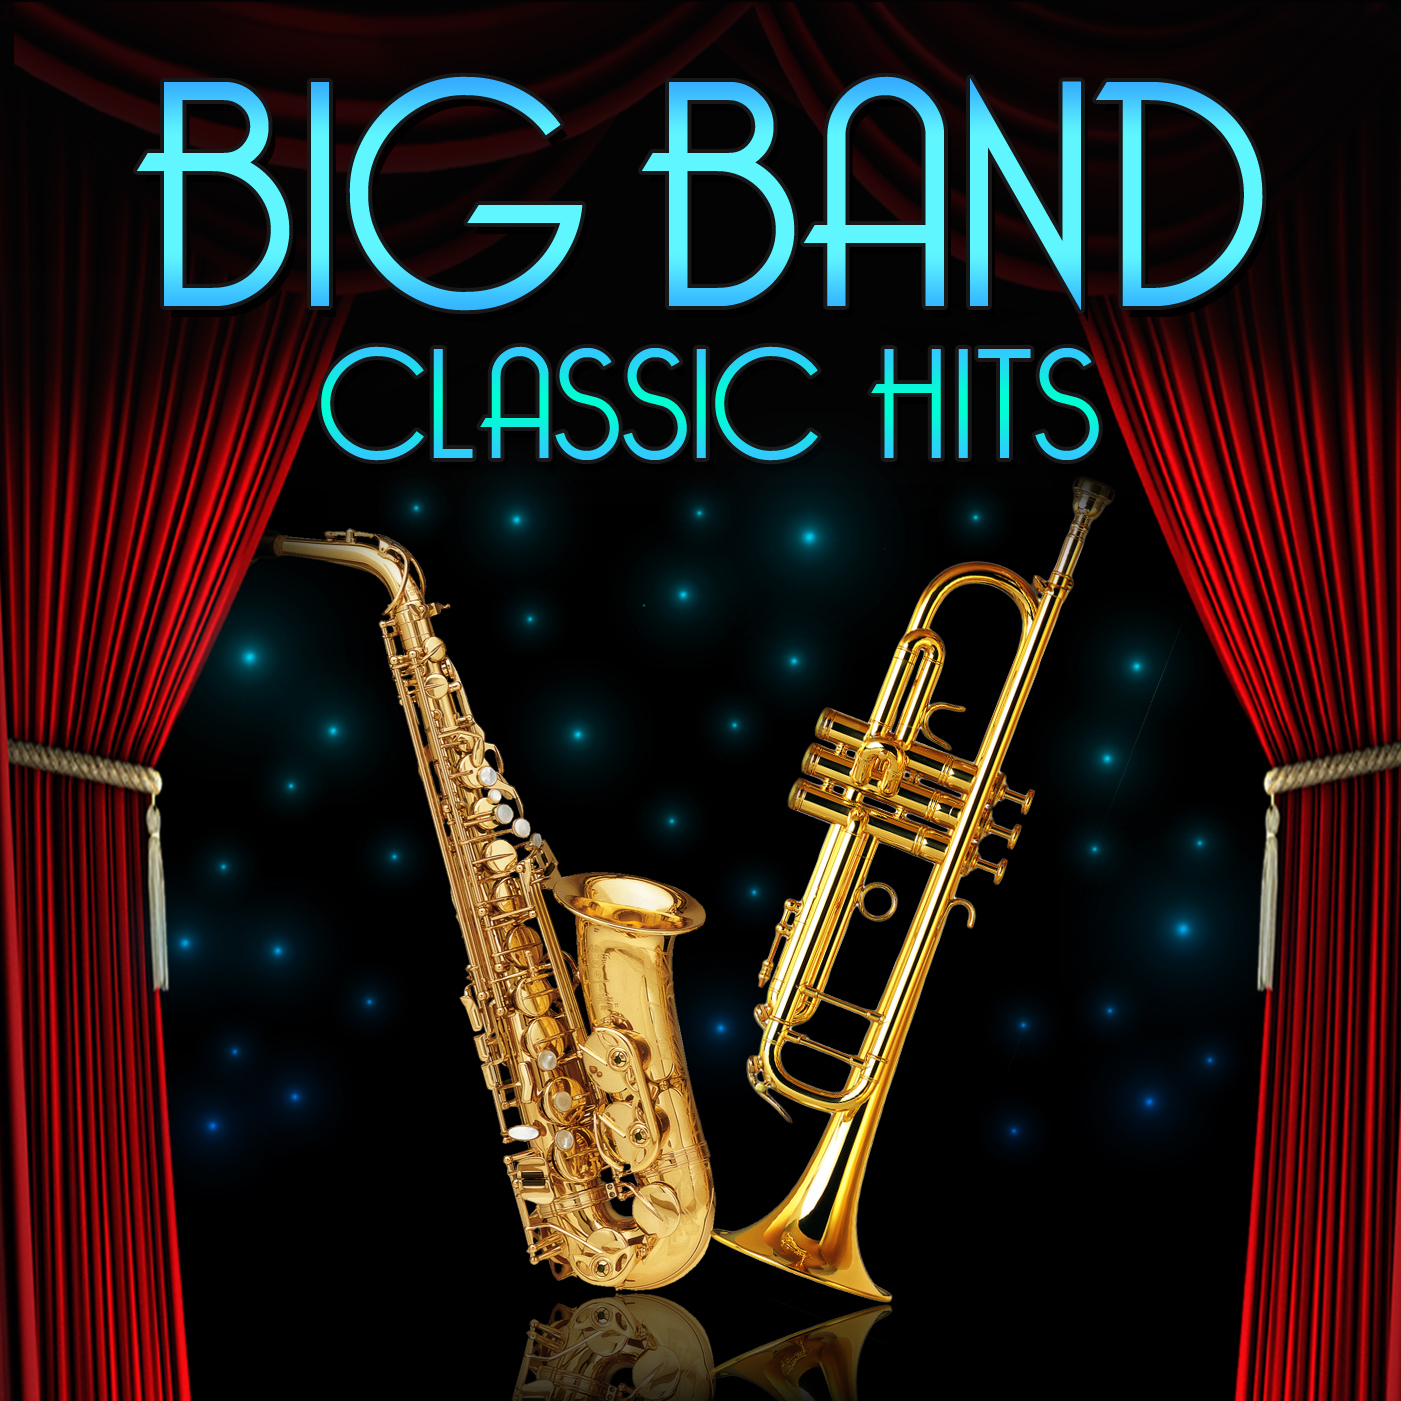 Big Band Classic Hits